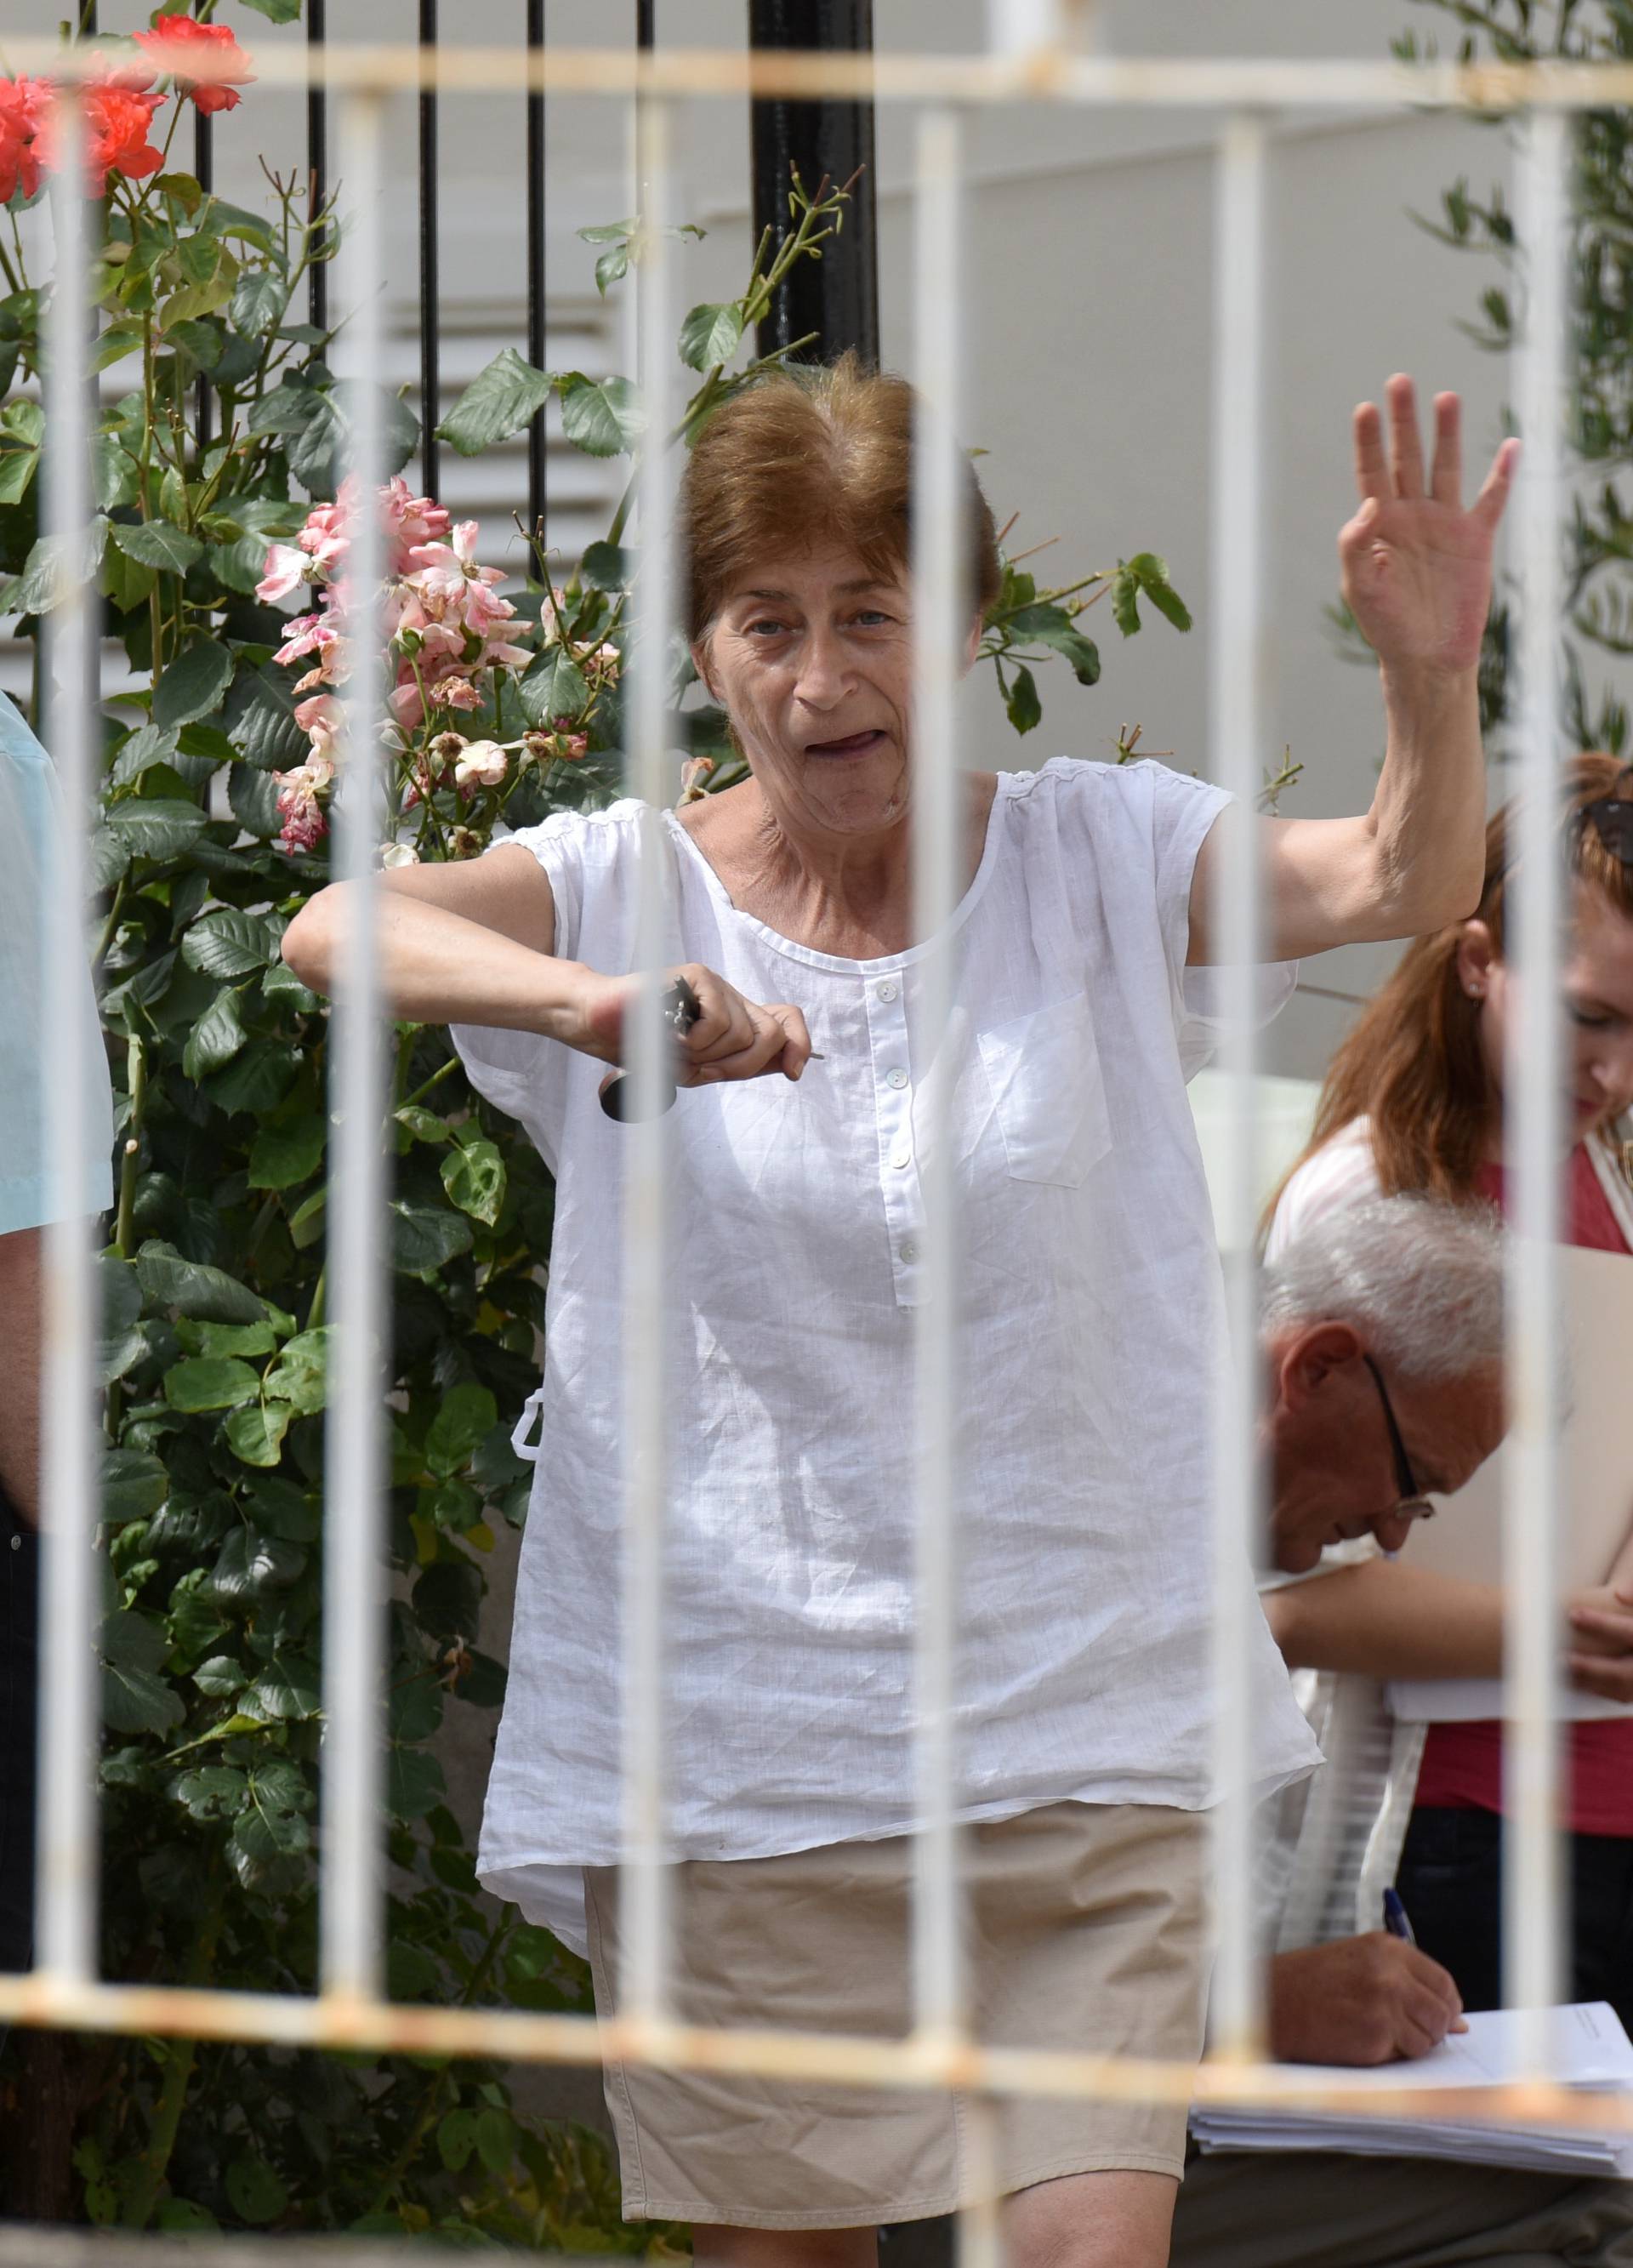 Zadar: Deložirali umirovljenicu i njenu nepokretna majku (91)